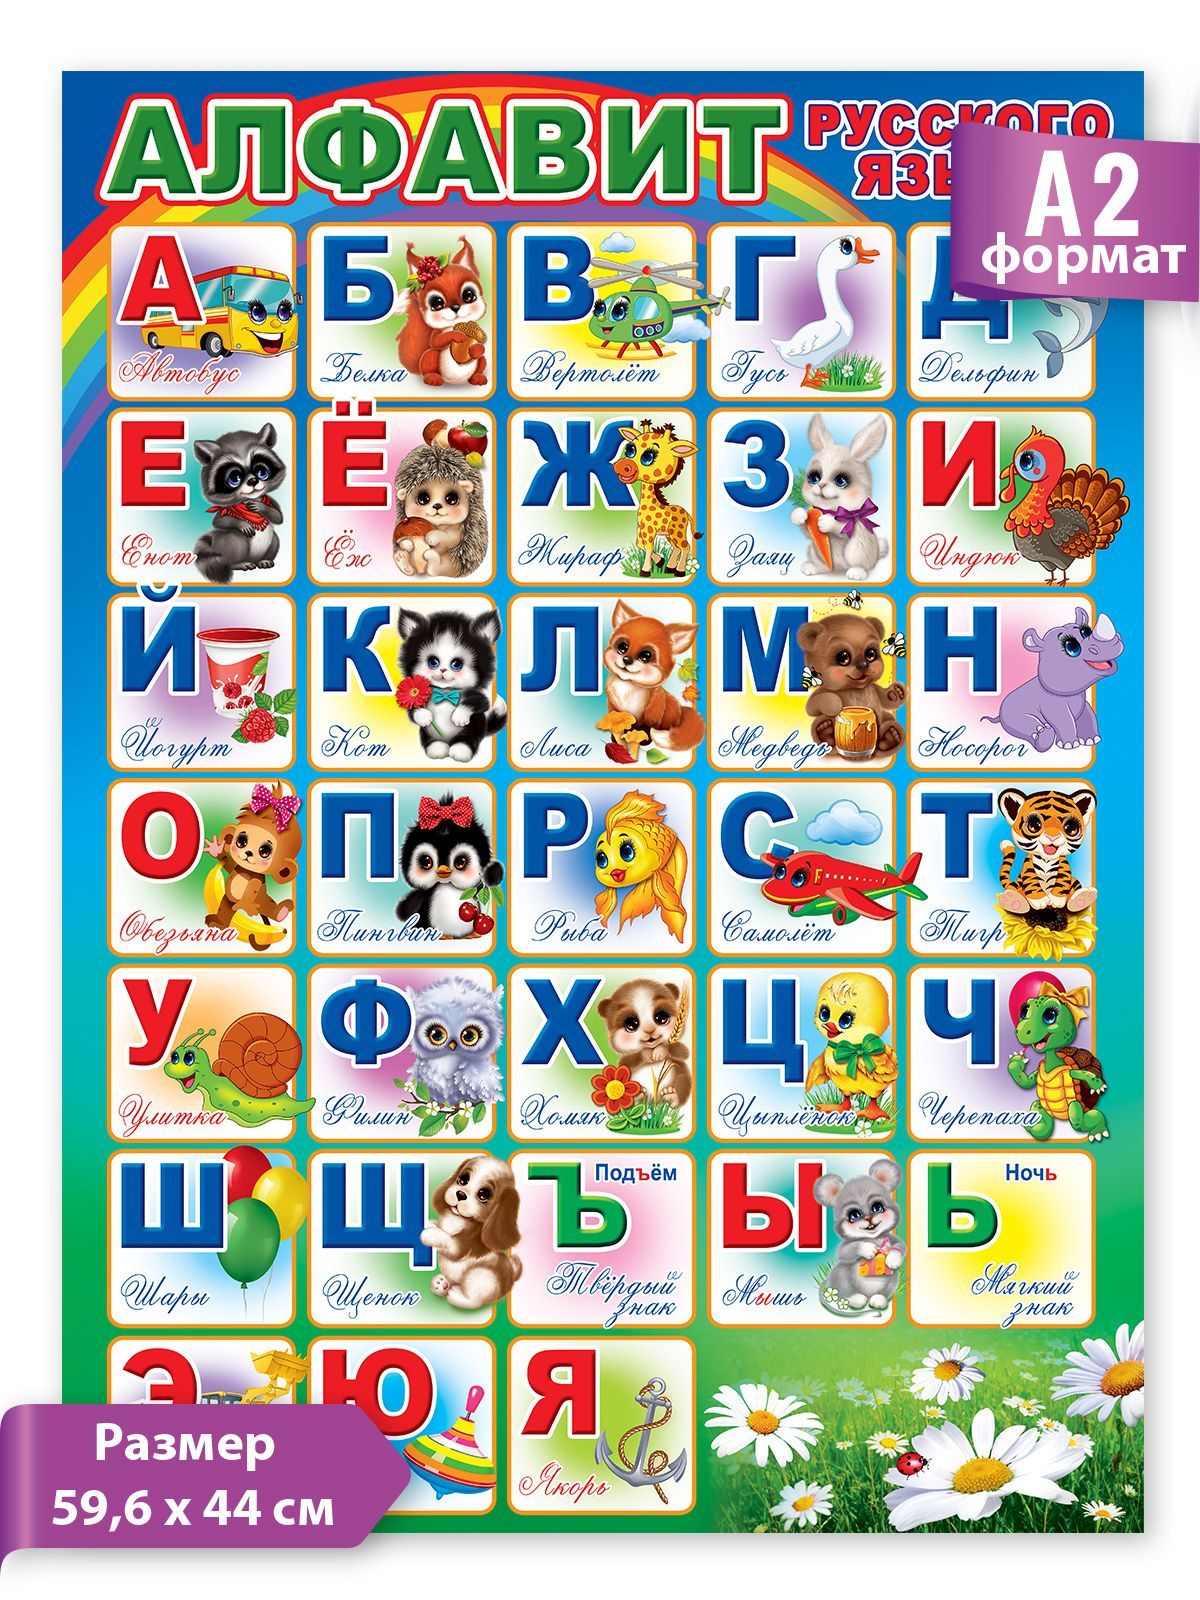 Включи фотки алфавита. Алфавит. Алфати. Русский алфавит. Алфавит русский для детей.